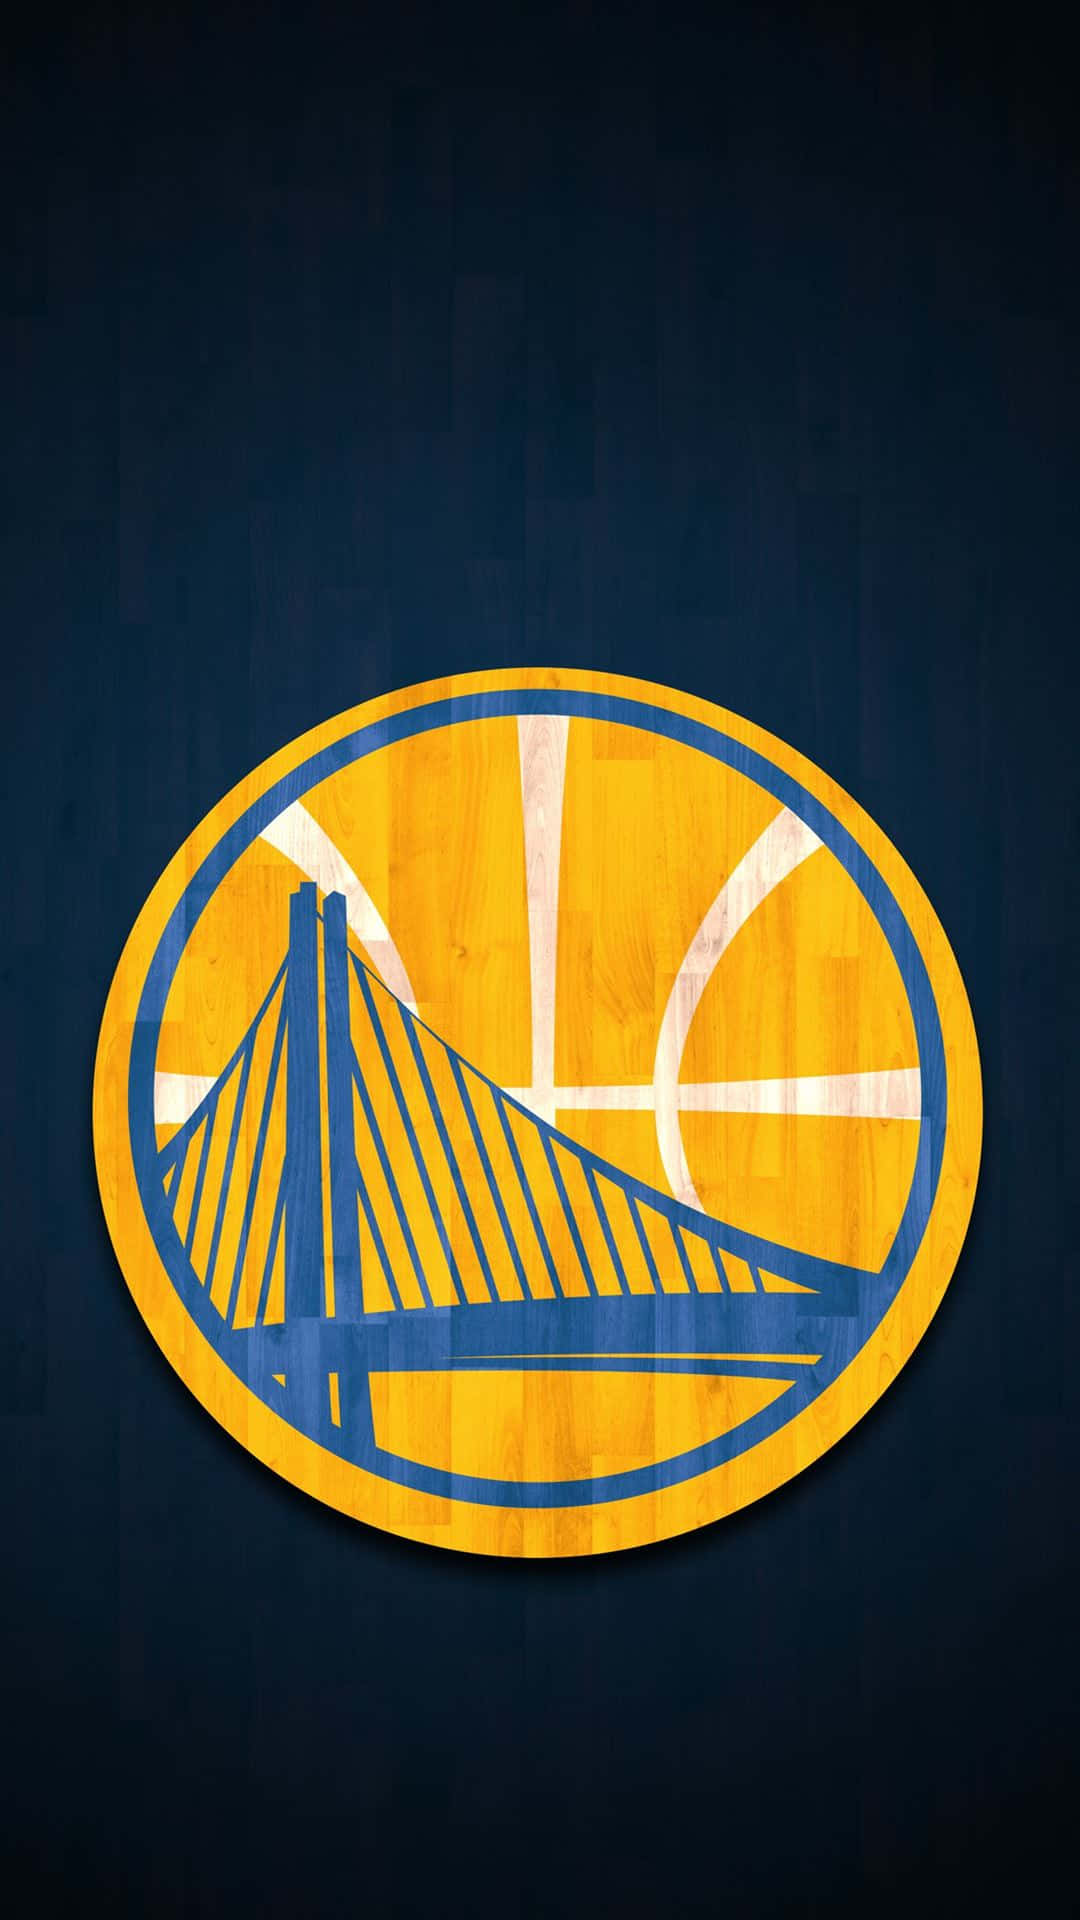 Logodo Golden State Warriors Com Design De Basquete. Papel de Parede